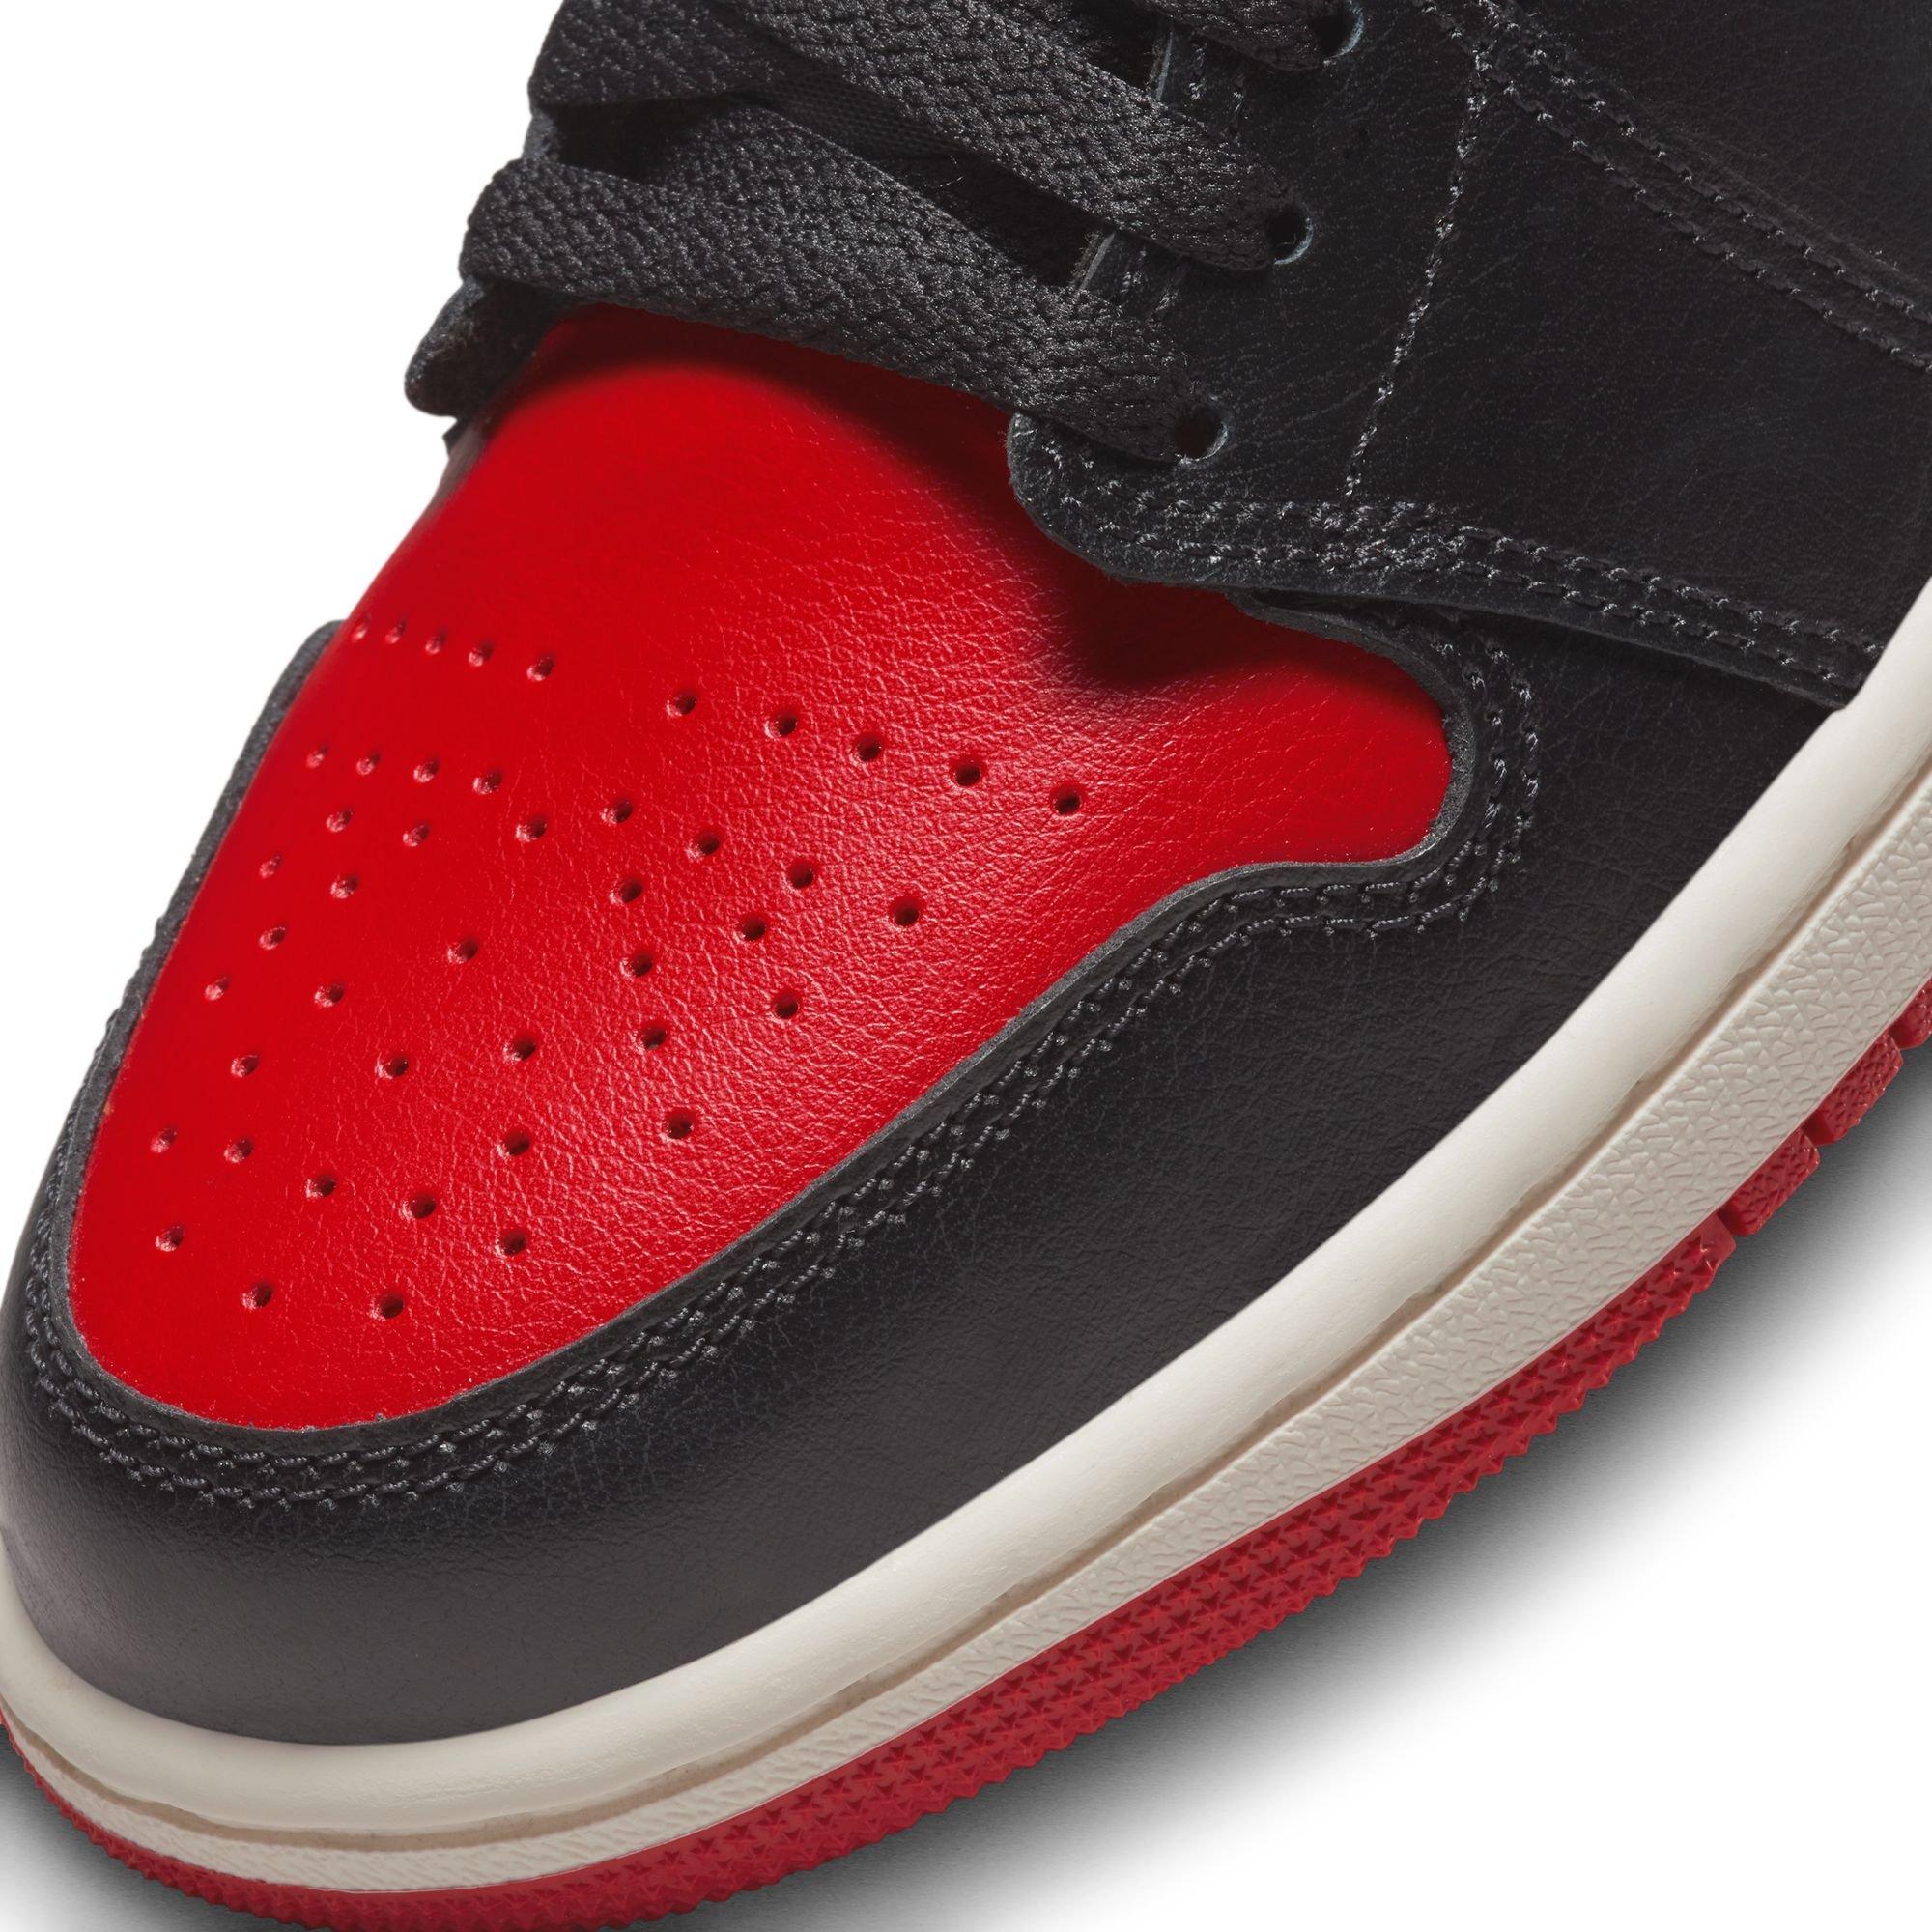 Jordan Air Jordan 1 LV8D SE Black / Gym Red / Sail Low Top Sneakers - Sneak  in Peace